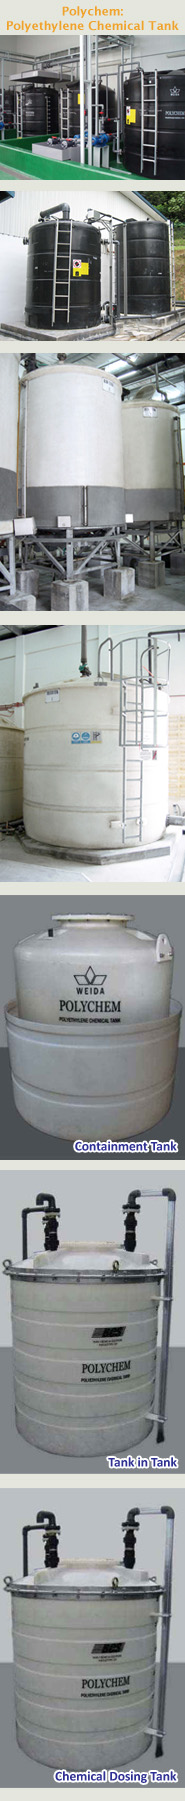 Polychem: Polyethylene Chemical Tank